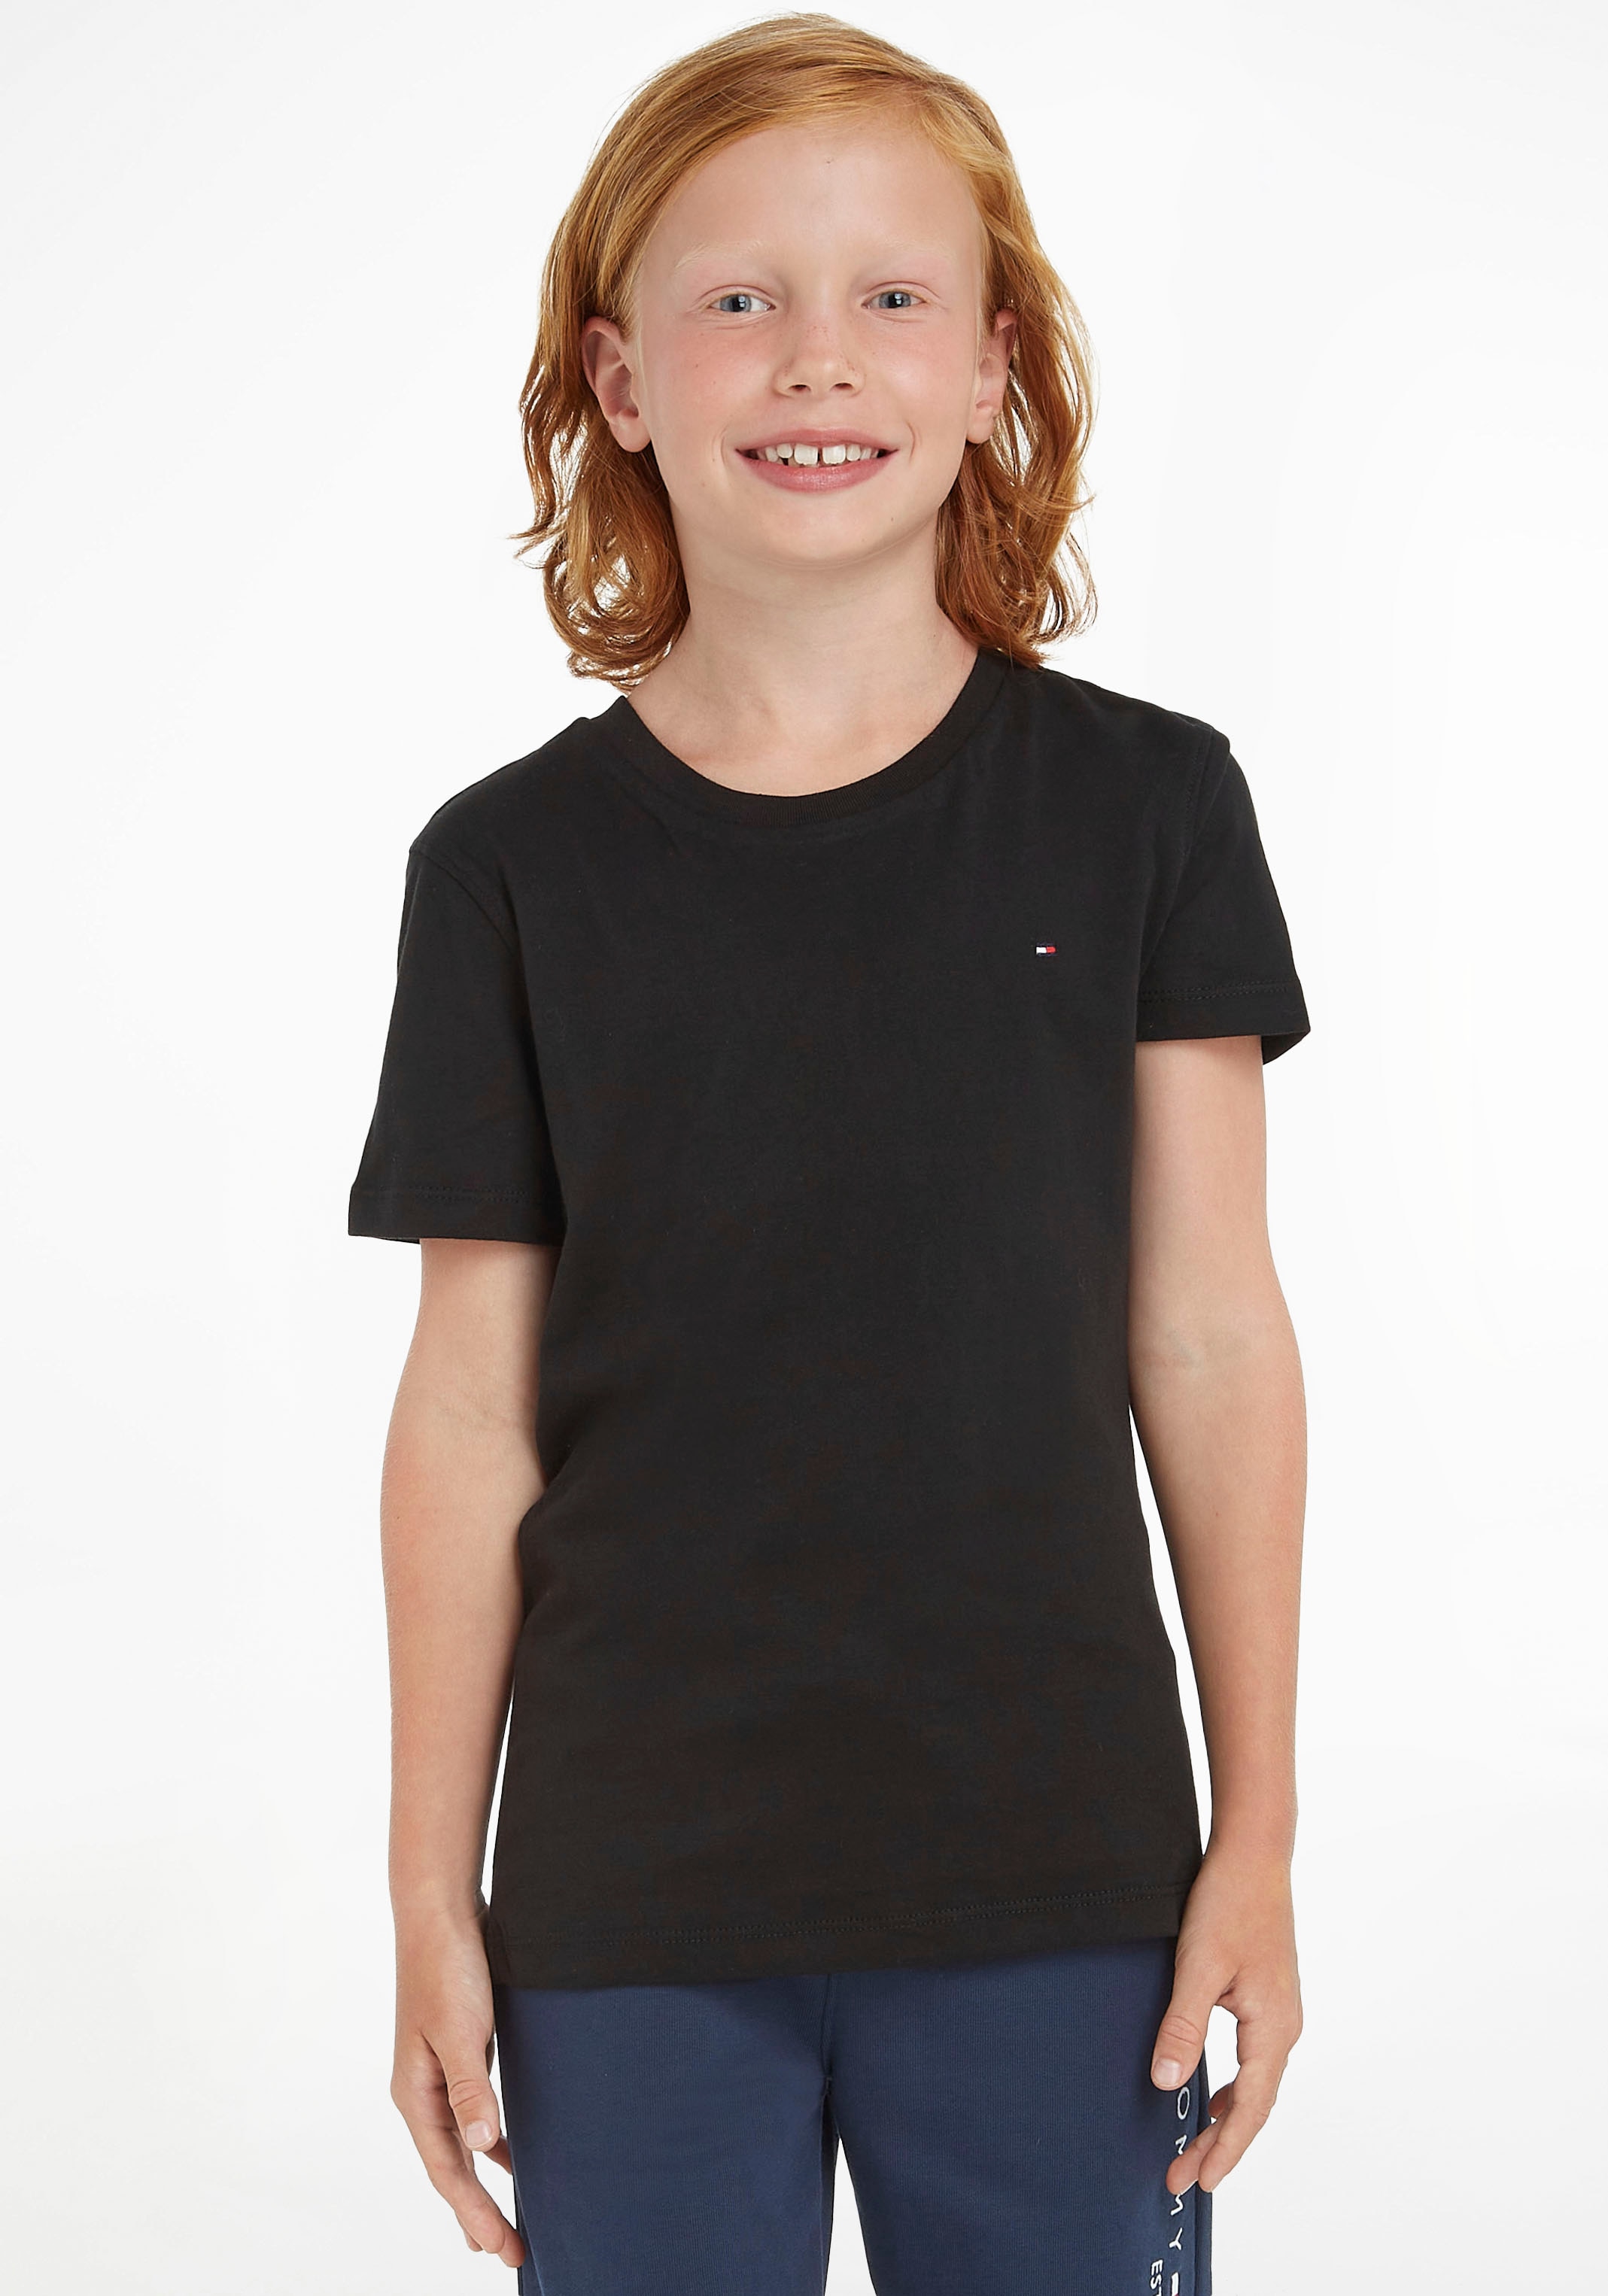 Tommy Hilfiger T-Shirt KNIT«, Jungen Junior »BOYS Kinder BASIC Kids CN MiniMe,für online kaufen